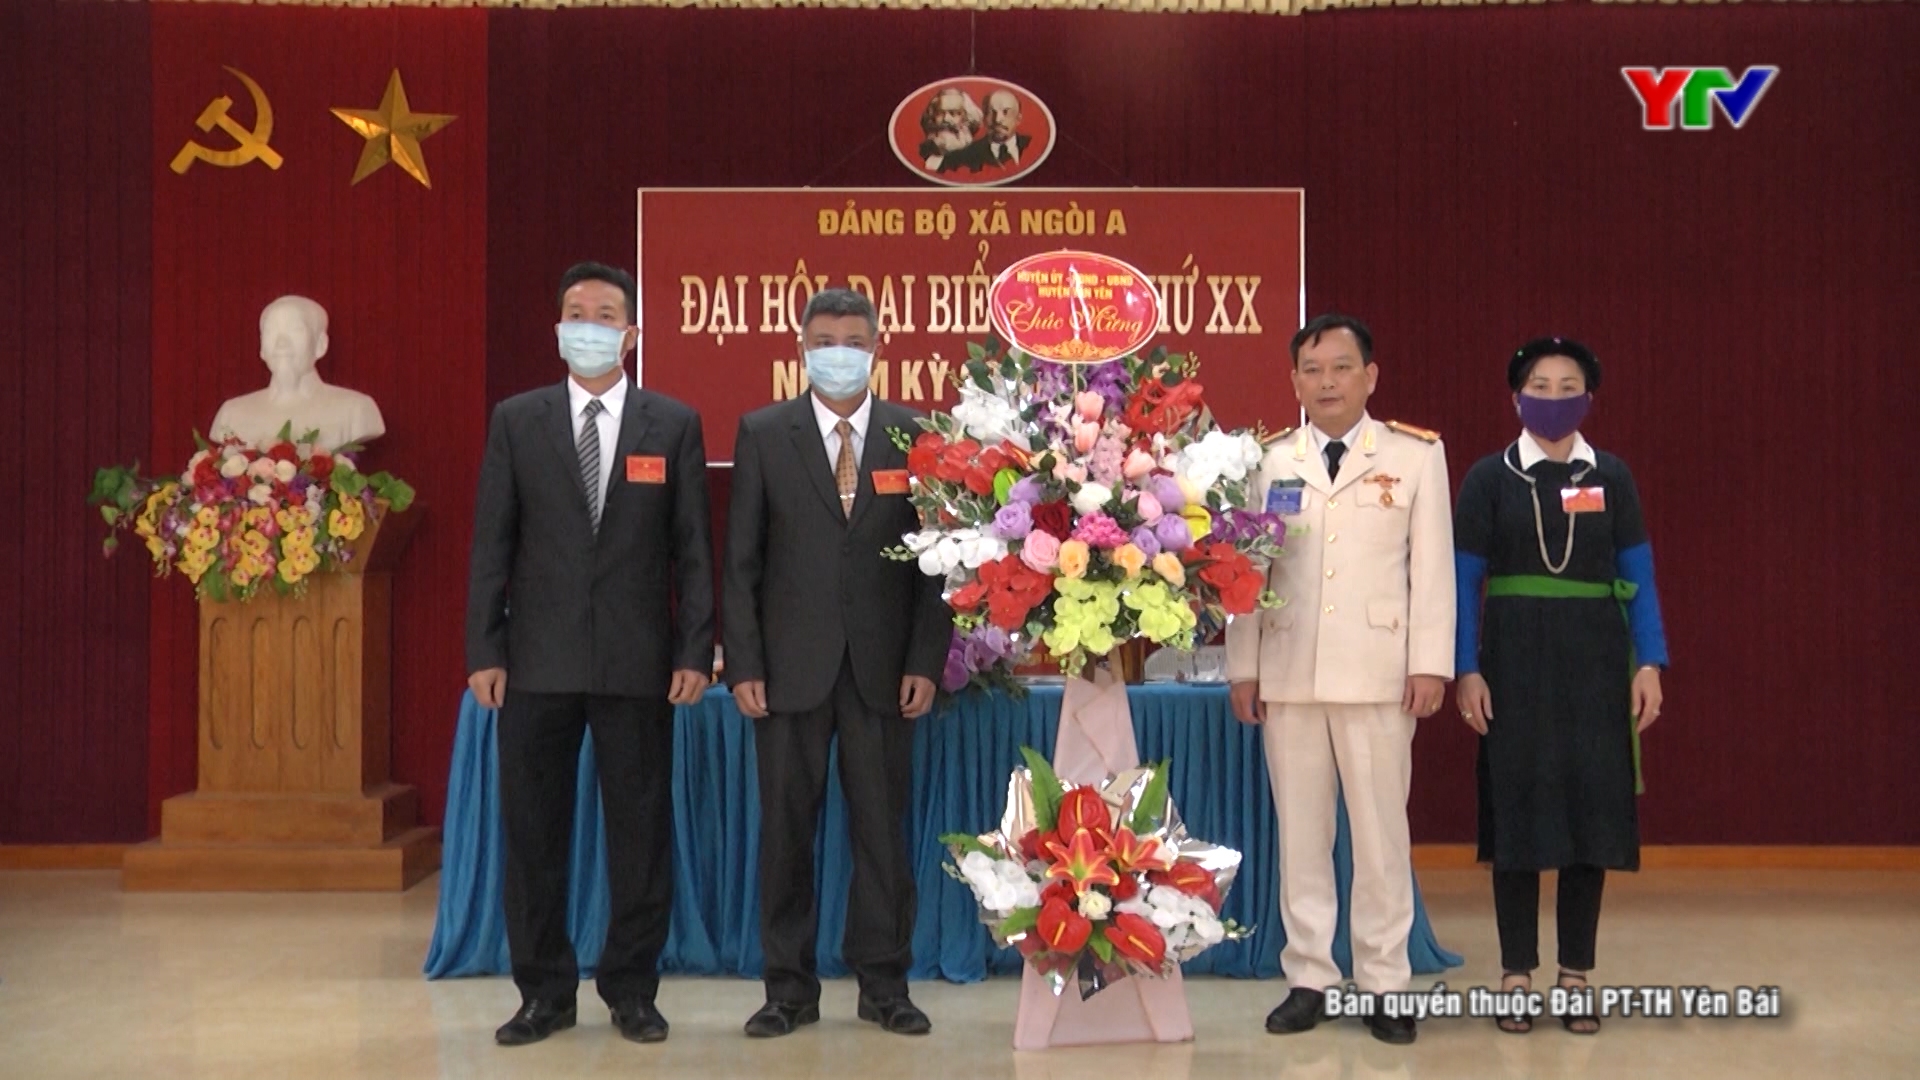 Đại hội Đảng bộ xã Ngòi A, huyện Văn Yên, nhiệm kỳ 2020-2025